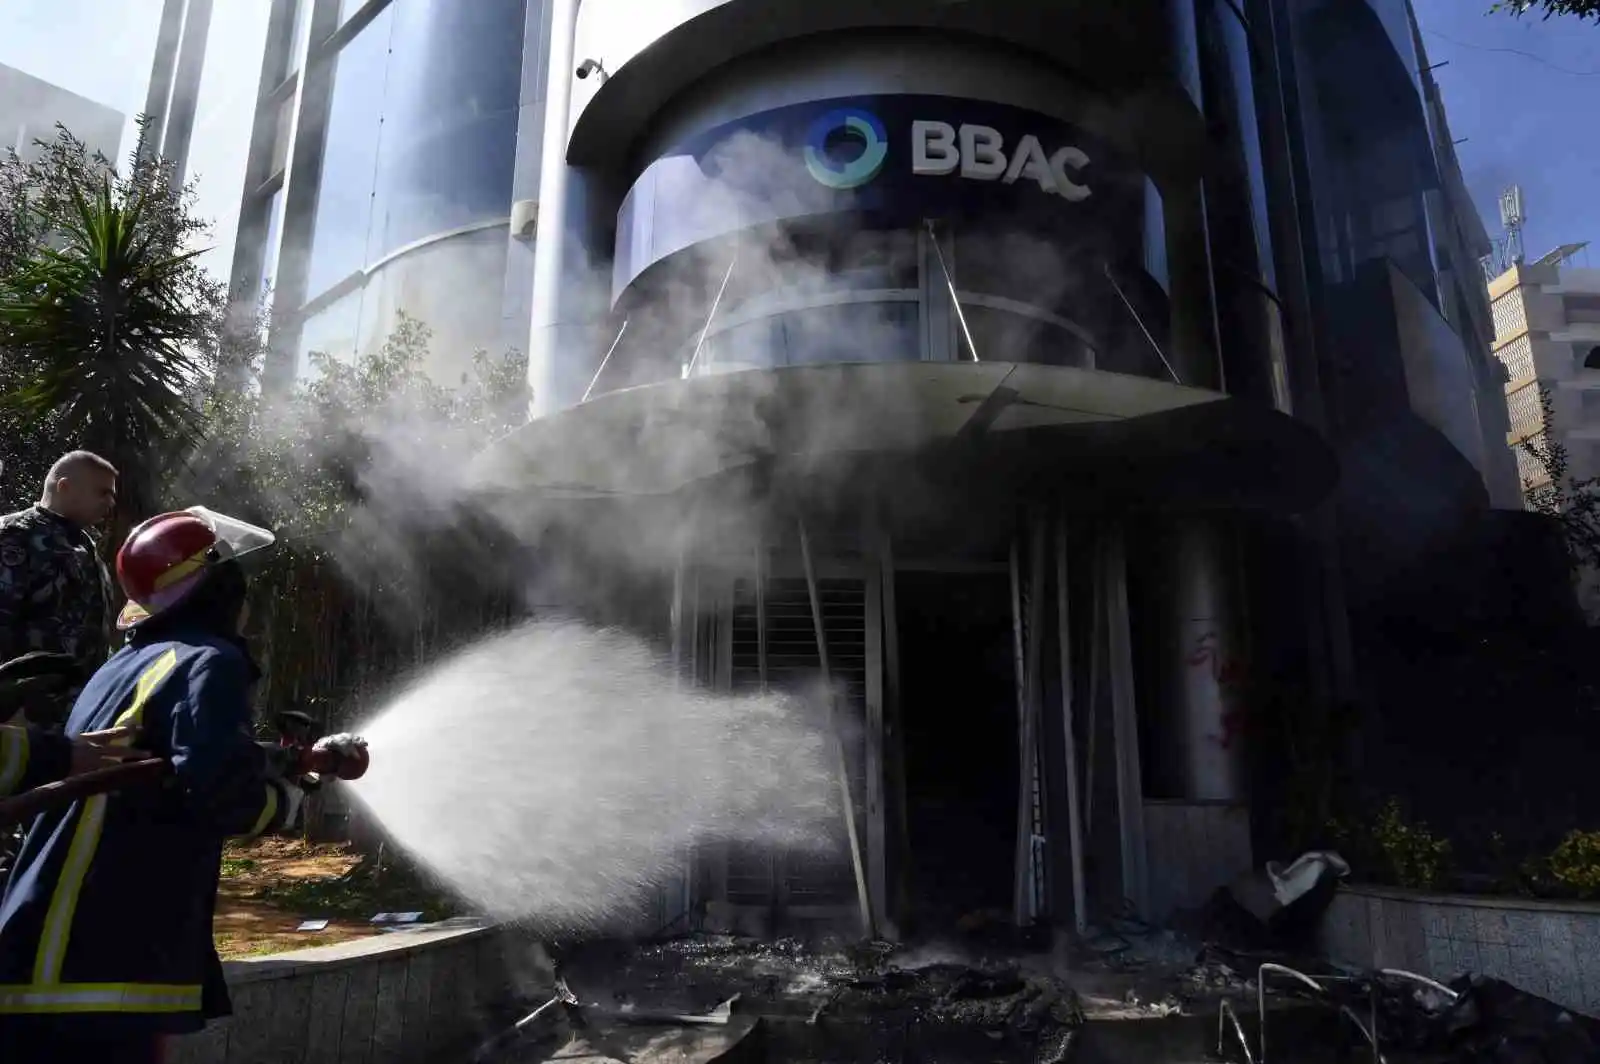 Lübnan’da halk banka şubelerini ateşe verdi
